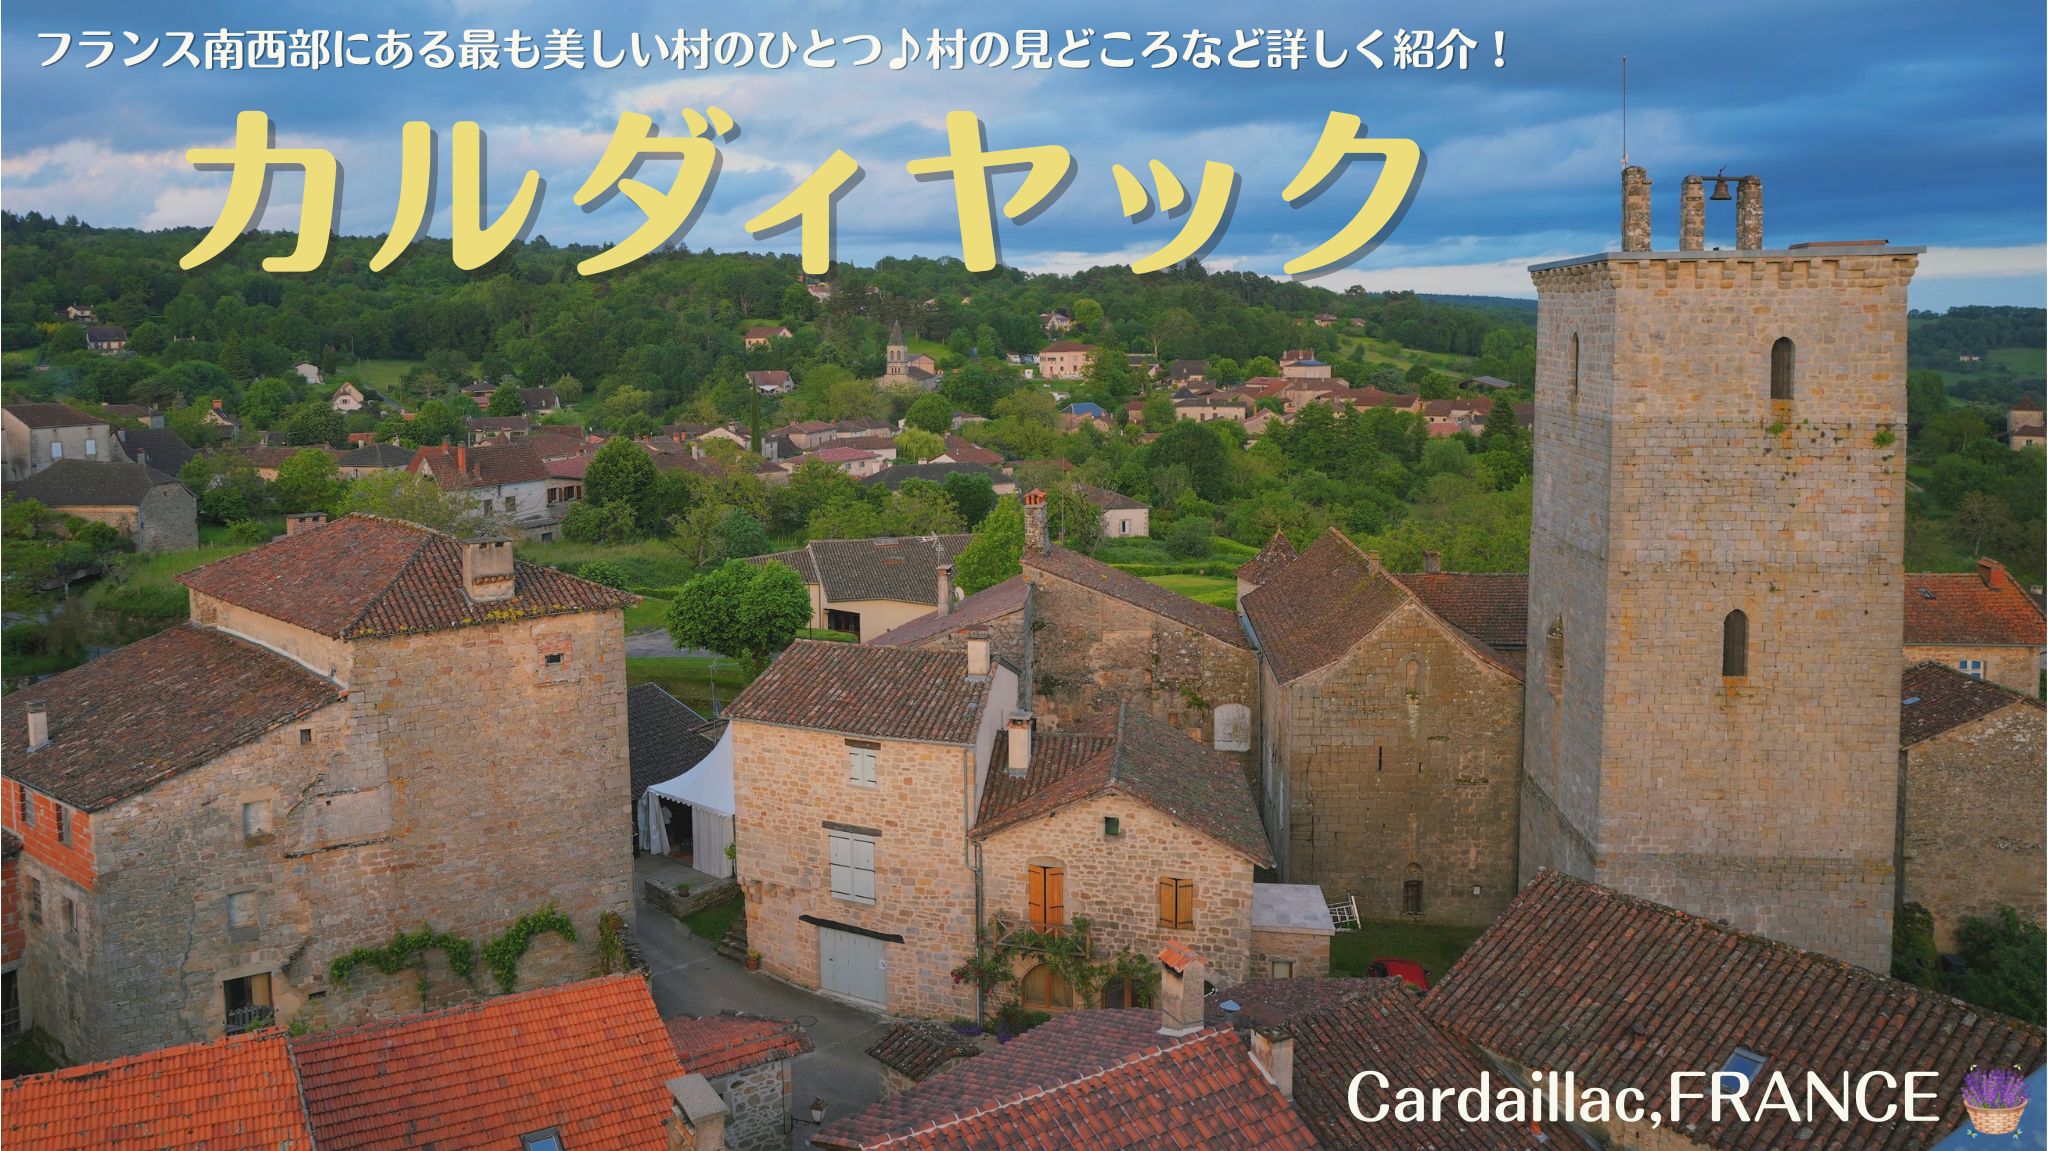 フランスの最も美しい村のひとつにも選ばれている、カルダイヤック(Cardaillac)